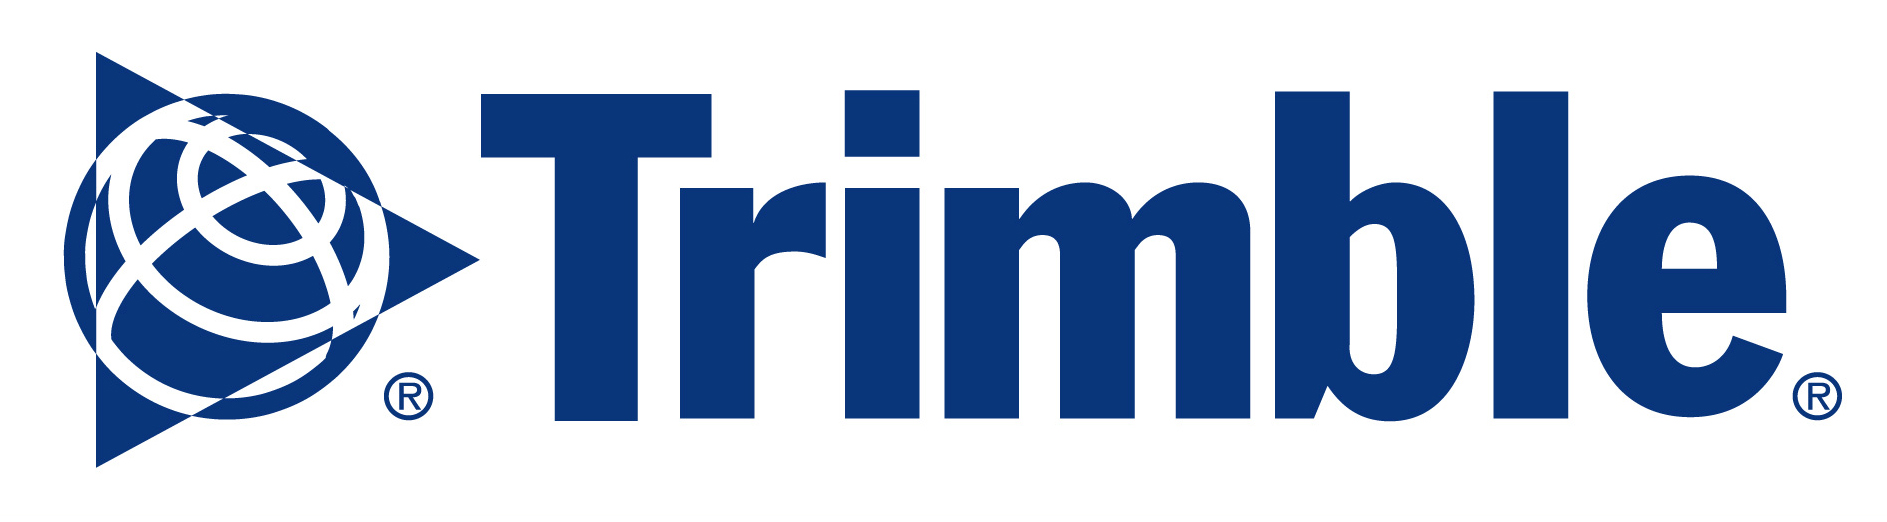 trimble_logo